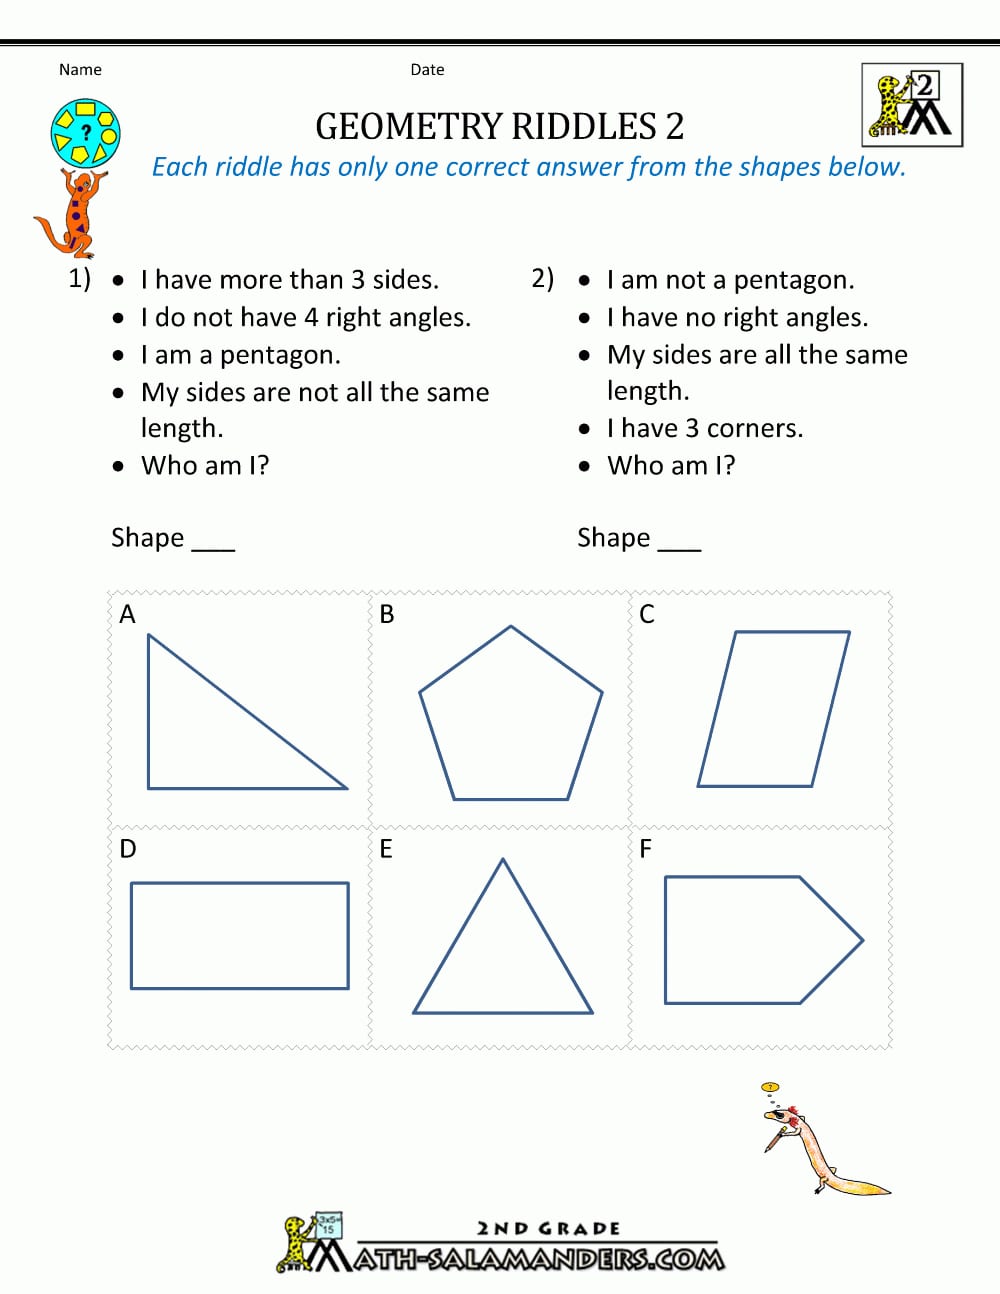 Free Geometry Worksheets 2Nd Grade Geometry Riddles As Well As 5Th Grade Geometry Worksheets